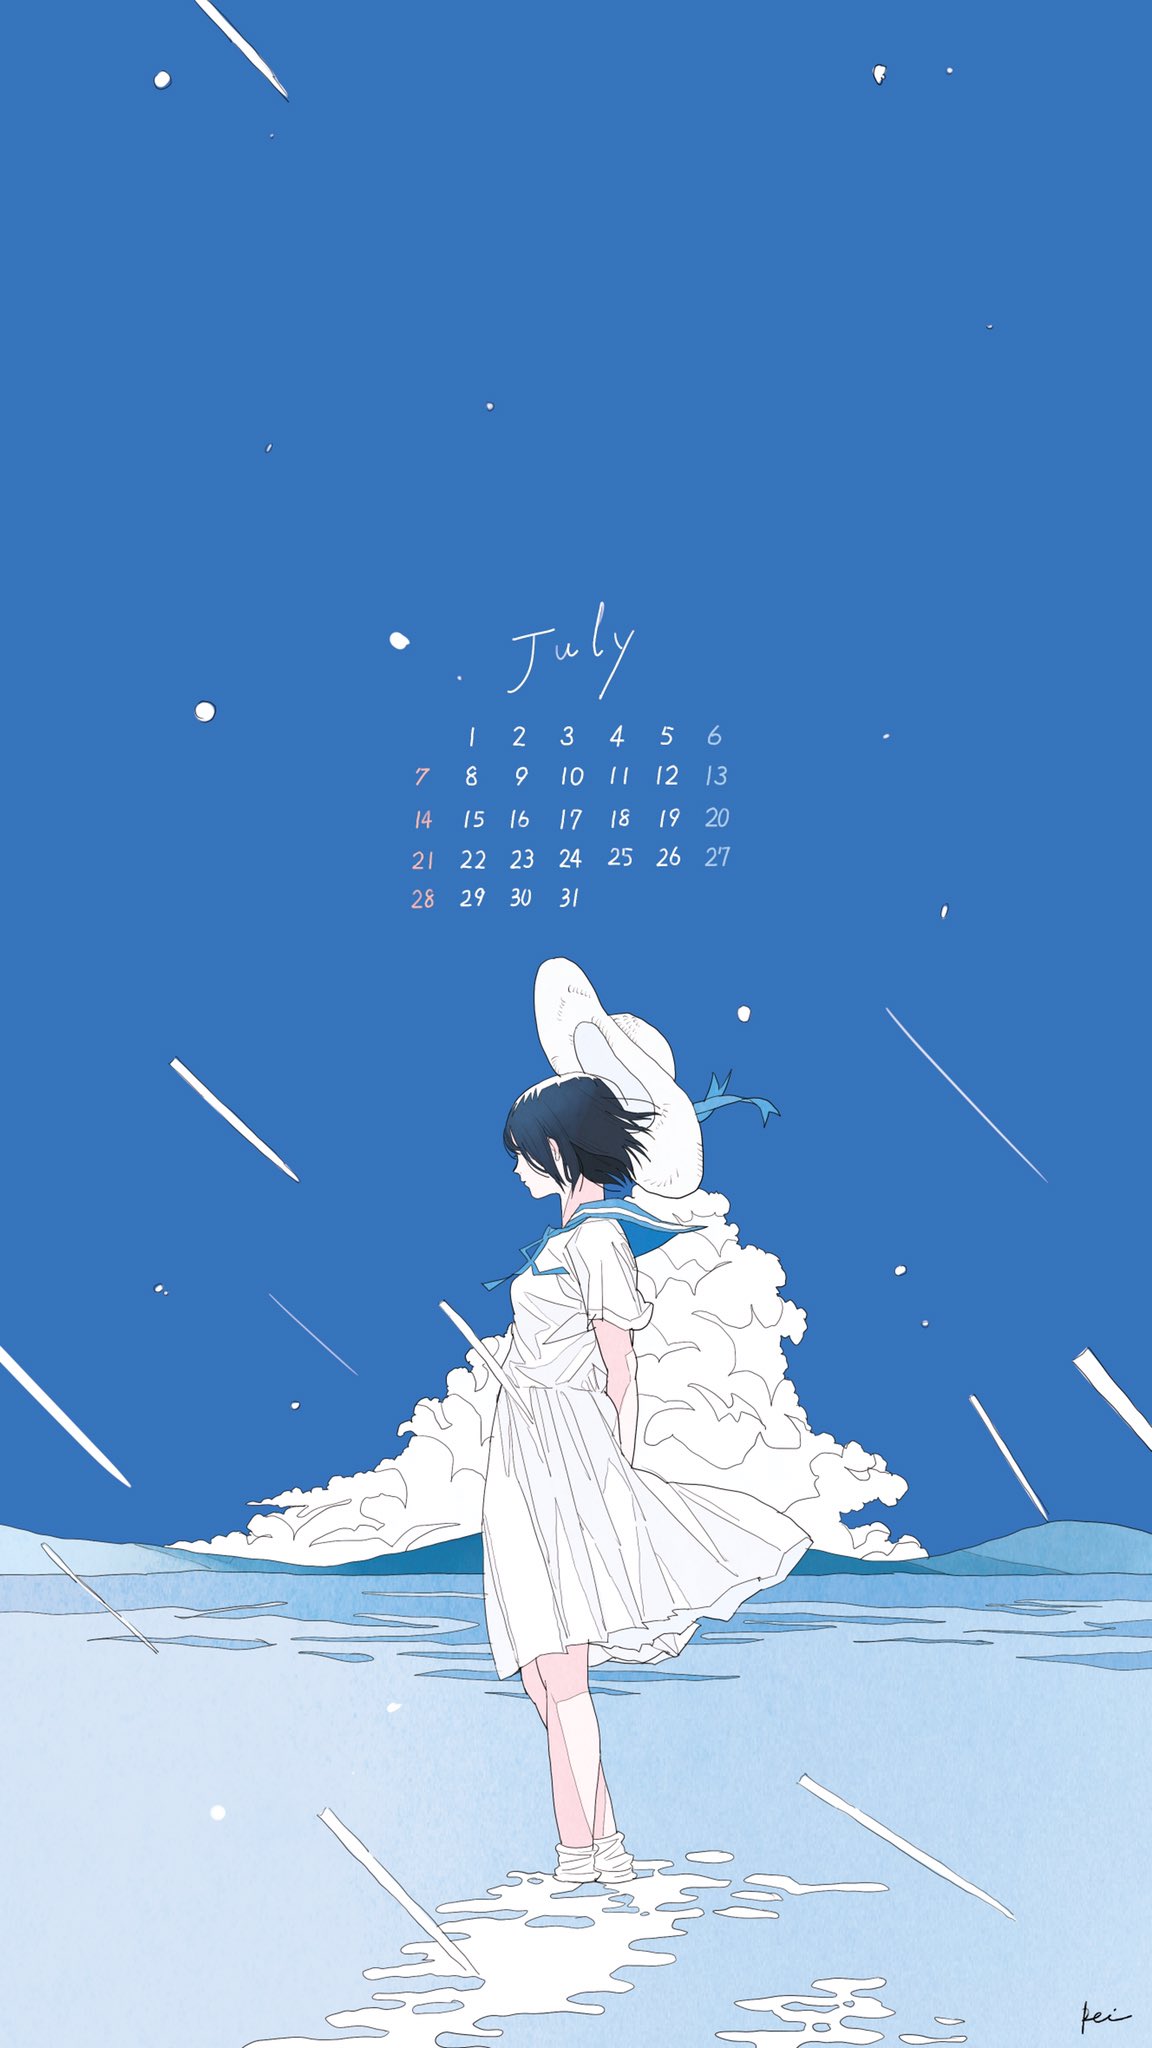 تويتر かとうれい Rei Kato على تويتر 7月のカレンダーになります 是非ご自由にお使いください 青い夏にしたいですね T Co Hppwnhpfah